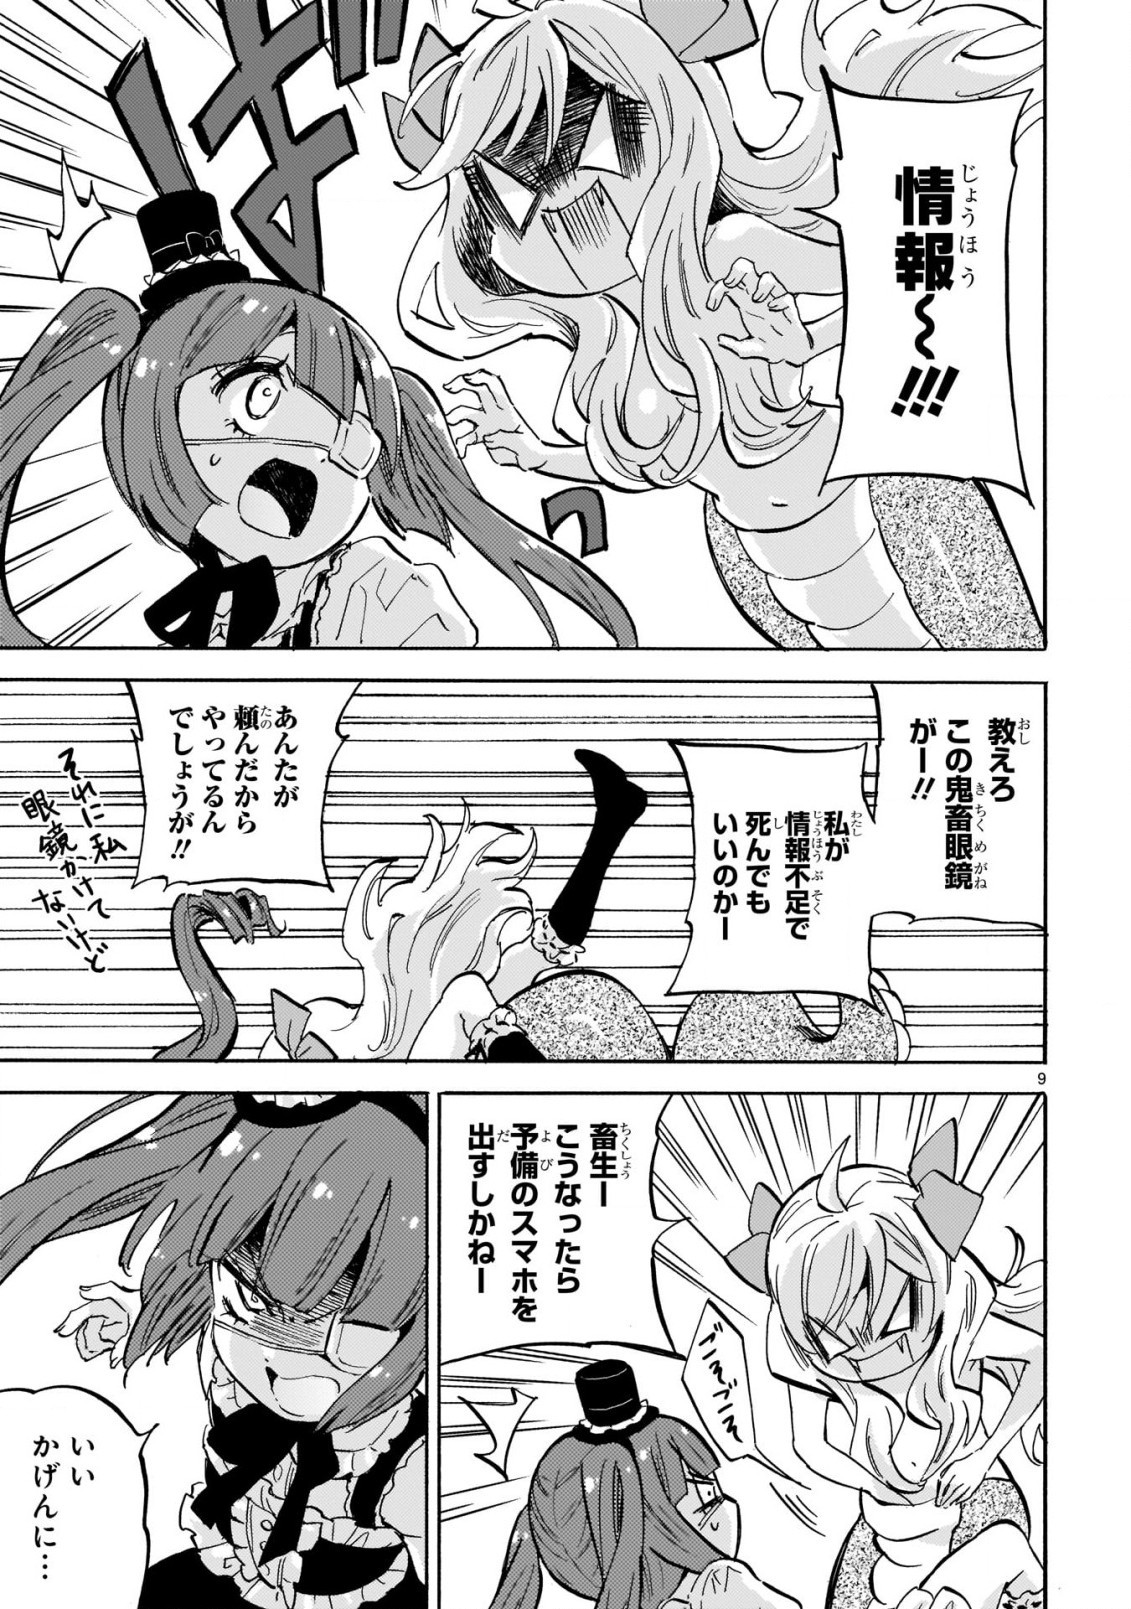 Jashin-chan Dropkick - Chapter 209 - Page 9